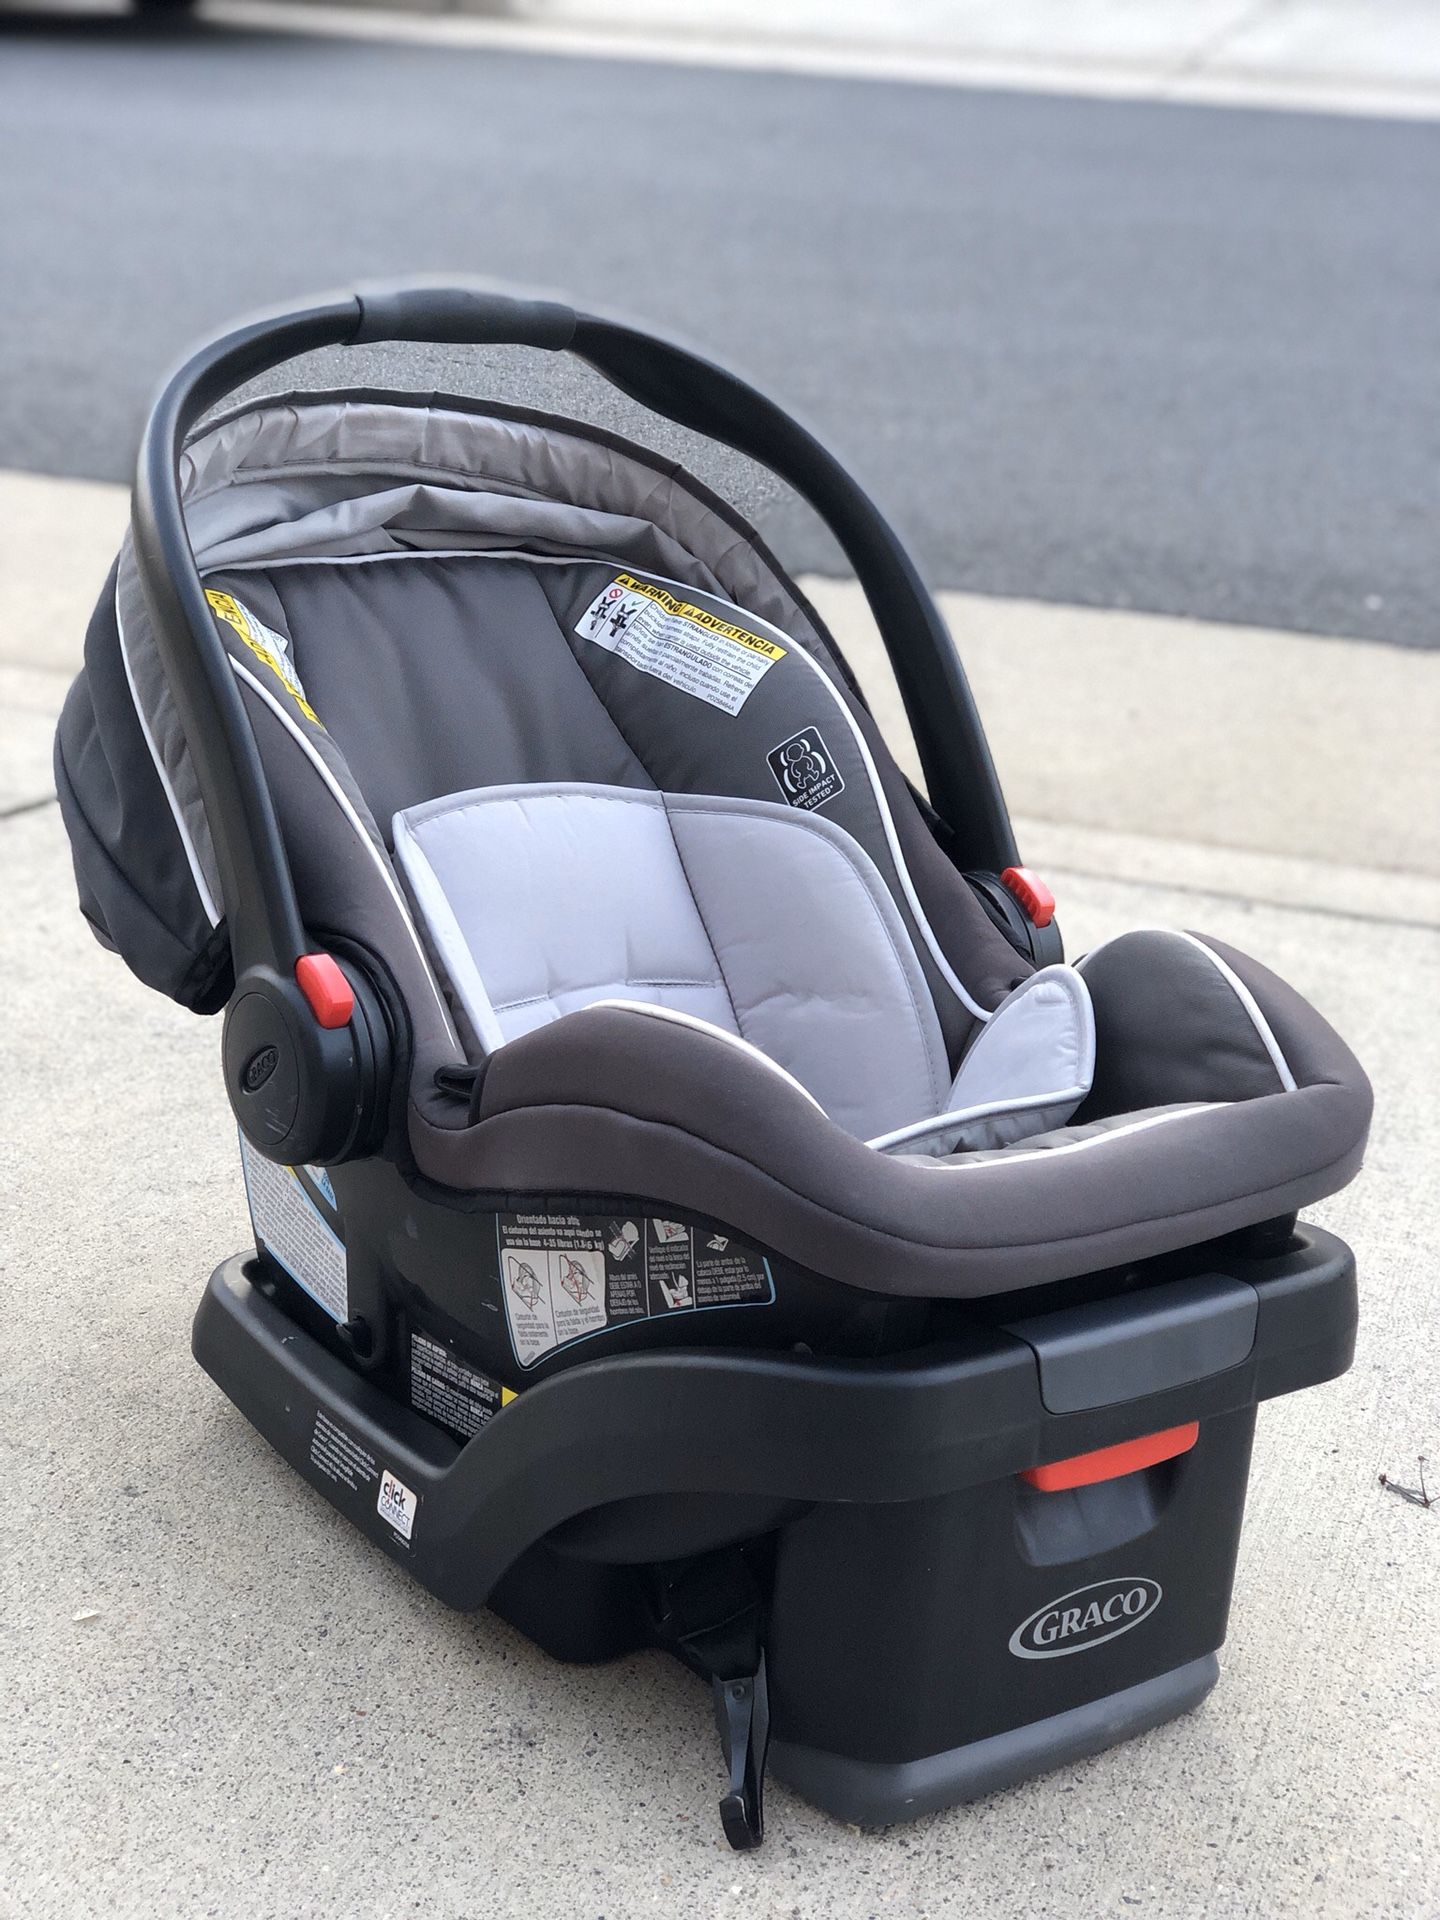 Graco Snugride 35 Infant Car Seat